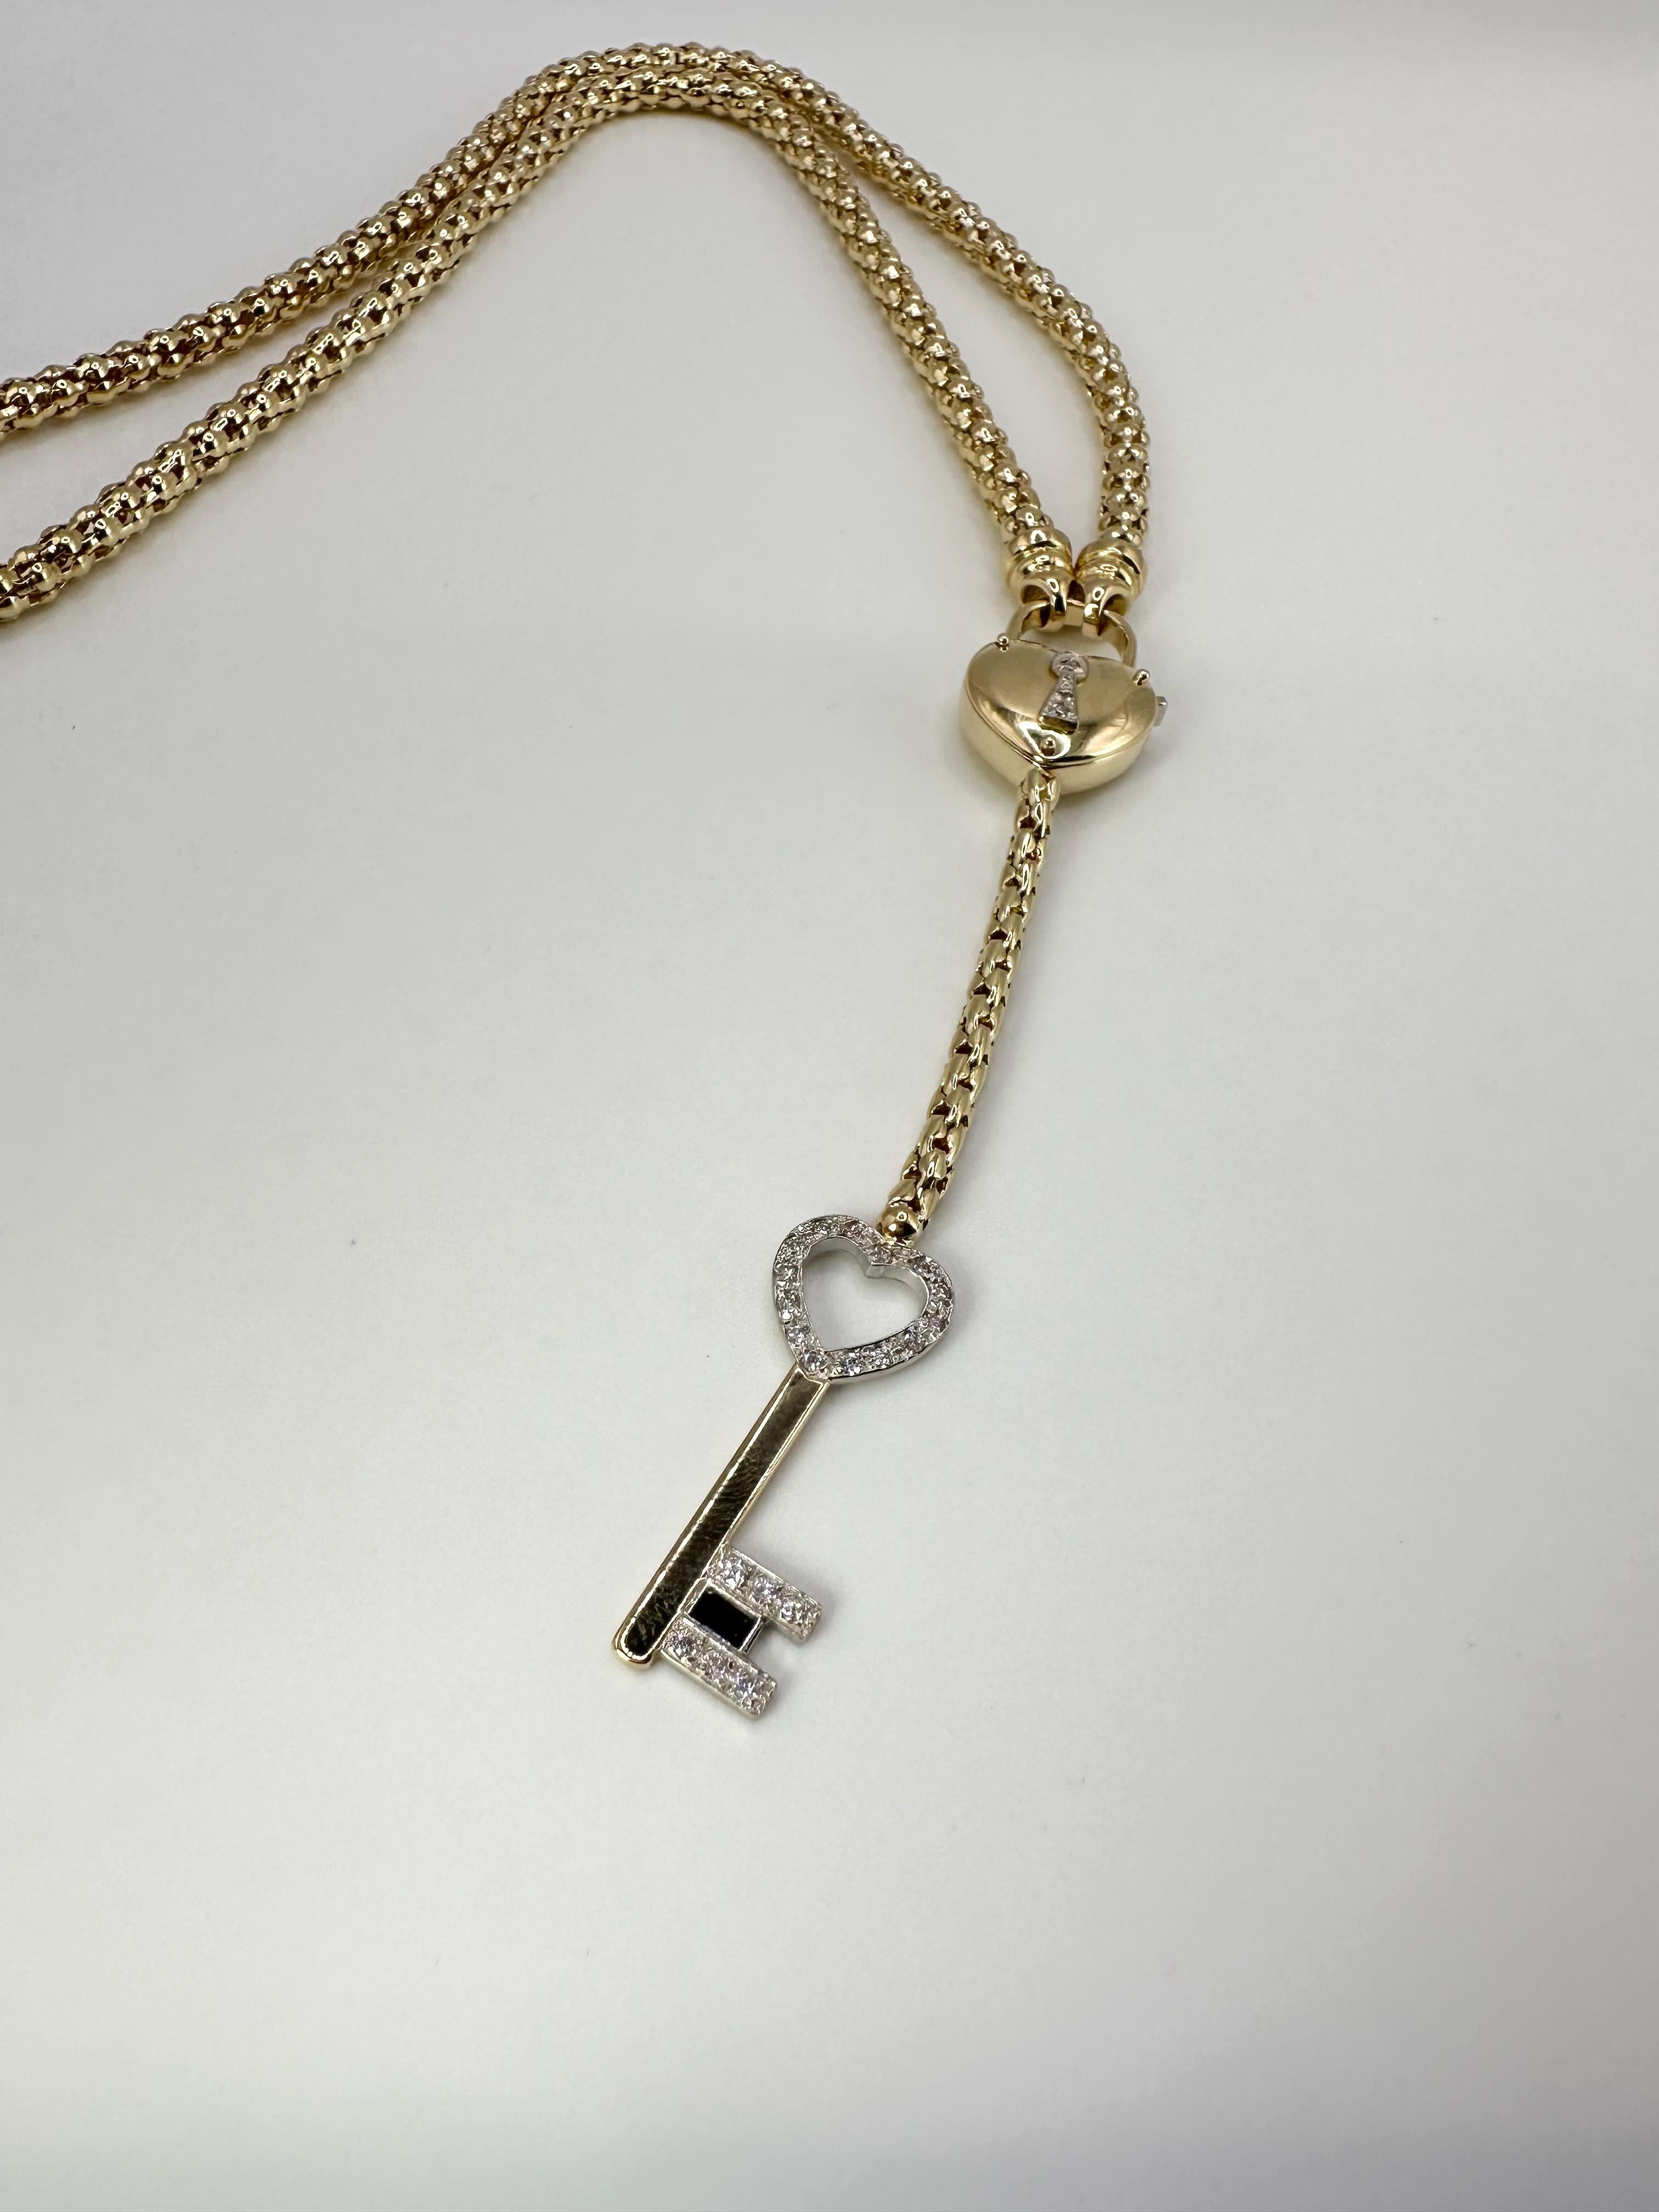 Briolette Cut Diamond Necklace Heart Locket Pendant Necklace Long For Sale